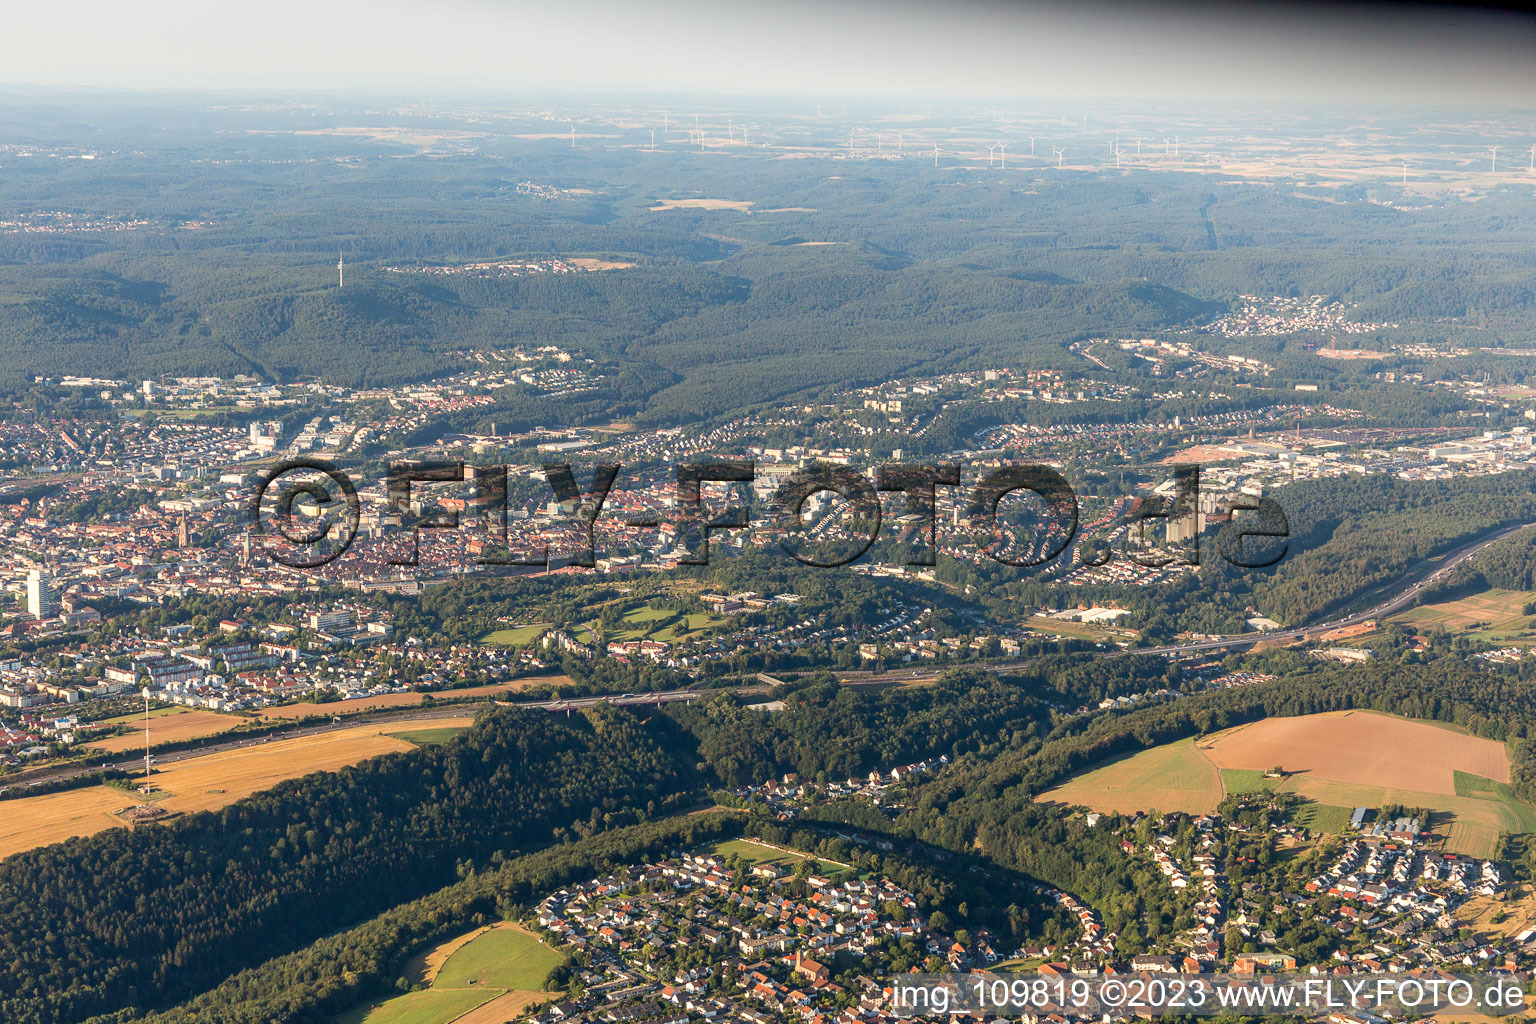 Kaiserslautern im Bundesland Rheinland-Pfalz, Deutschland aus der Drohnenperspektive